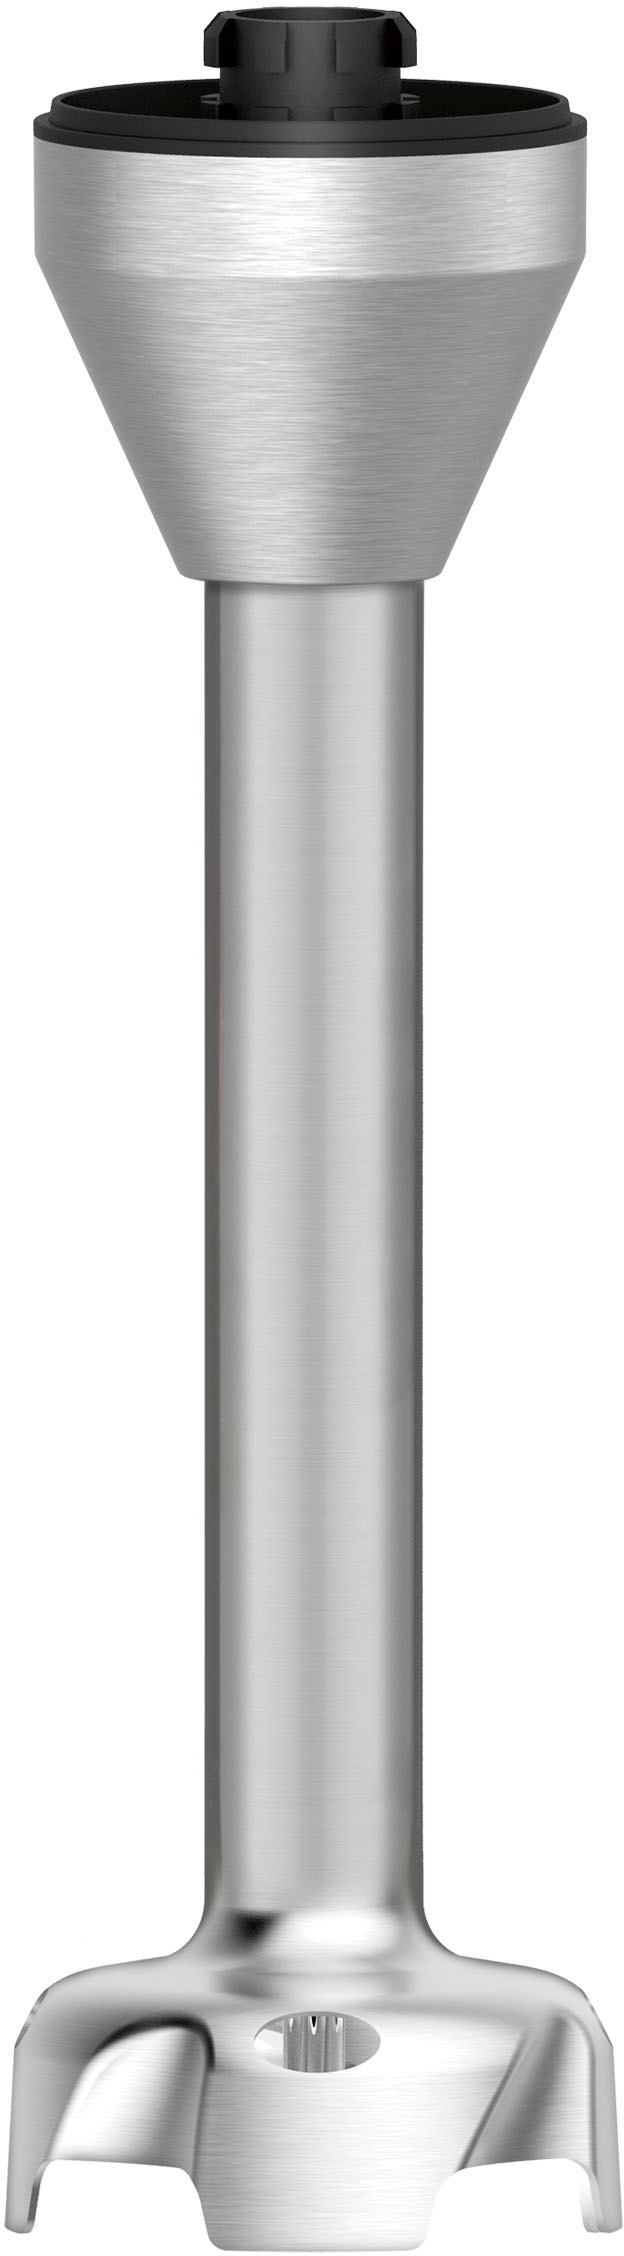 Best Buy: Cuisinart Smart Stick 5-Speed Hand Blender Stainless Steel  CSB-400CD